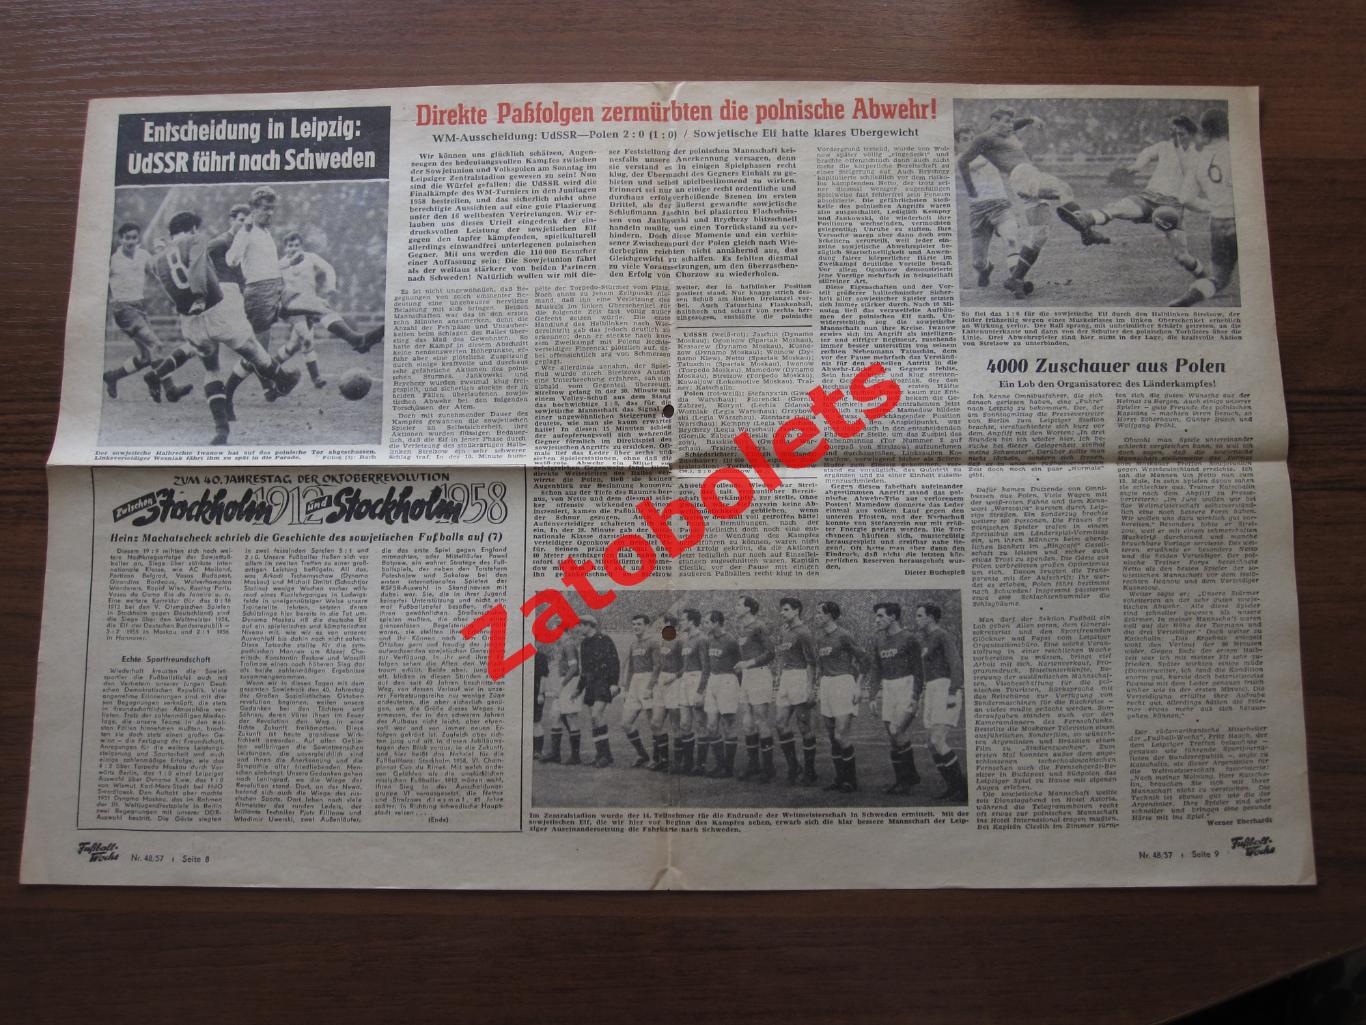 СССР - Польша 1957 Разворот газеты Fussball woche с отчетом о матче в Лейпциге